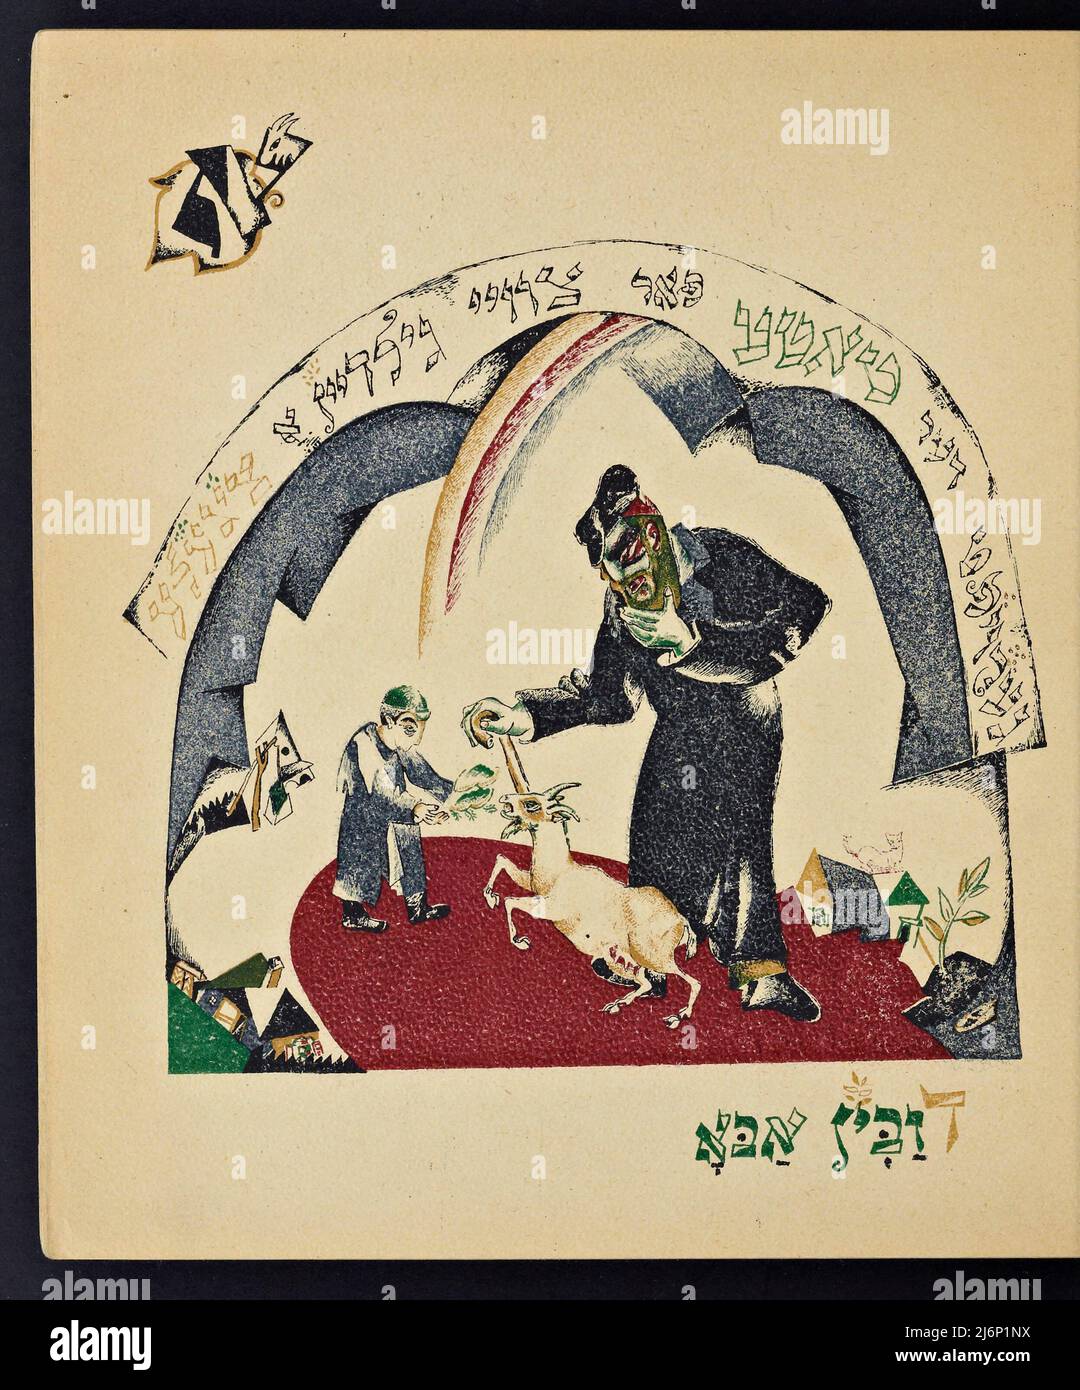 Illustrierte jiddische Version des von El Lissitzky (Lazar Markovich Lissitzky) illustrierten Kinderbuchs von Had Gadya, das 1919 in Kiew veröffentlicht wurde Chad Gadya oder Had Gadya ('eine kleine Ziege oder 'ein Kind') ist ein verspieltes Sammellied auf Aramäisch und Hebräisch. Es wird am Ende des Passahfestes Seder gesungen, dem jüdischen Ritualfest, das den Beginn des jüdischen Passahfestes markiert. Die Melodie mag ihre Wurzeln in der mittelalterlichen deutschen Volksmusik haben. Sie erschien erstmals 1590 in einer Haggada, die in Prag gedruckt wurde, und ist damit die jüngste Aufnahme in die traditionelle Passahsederliturgie Stockfoto